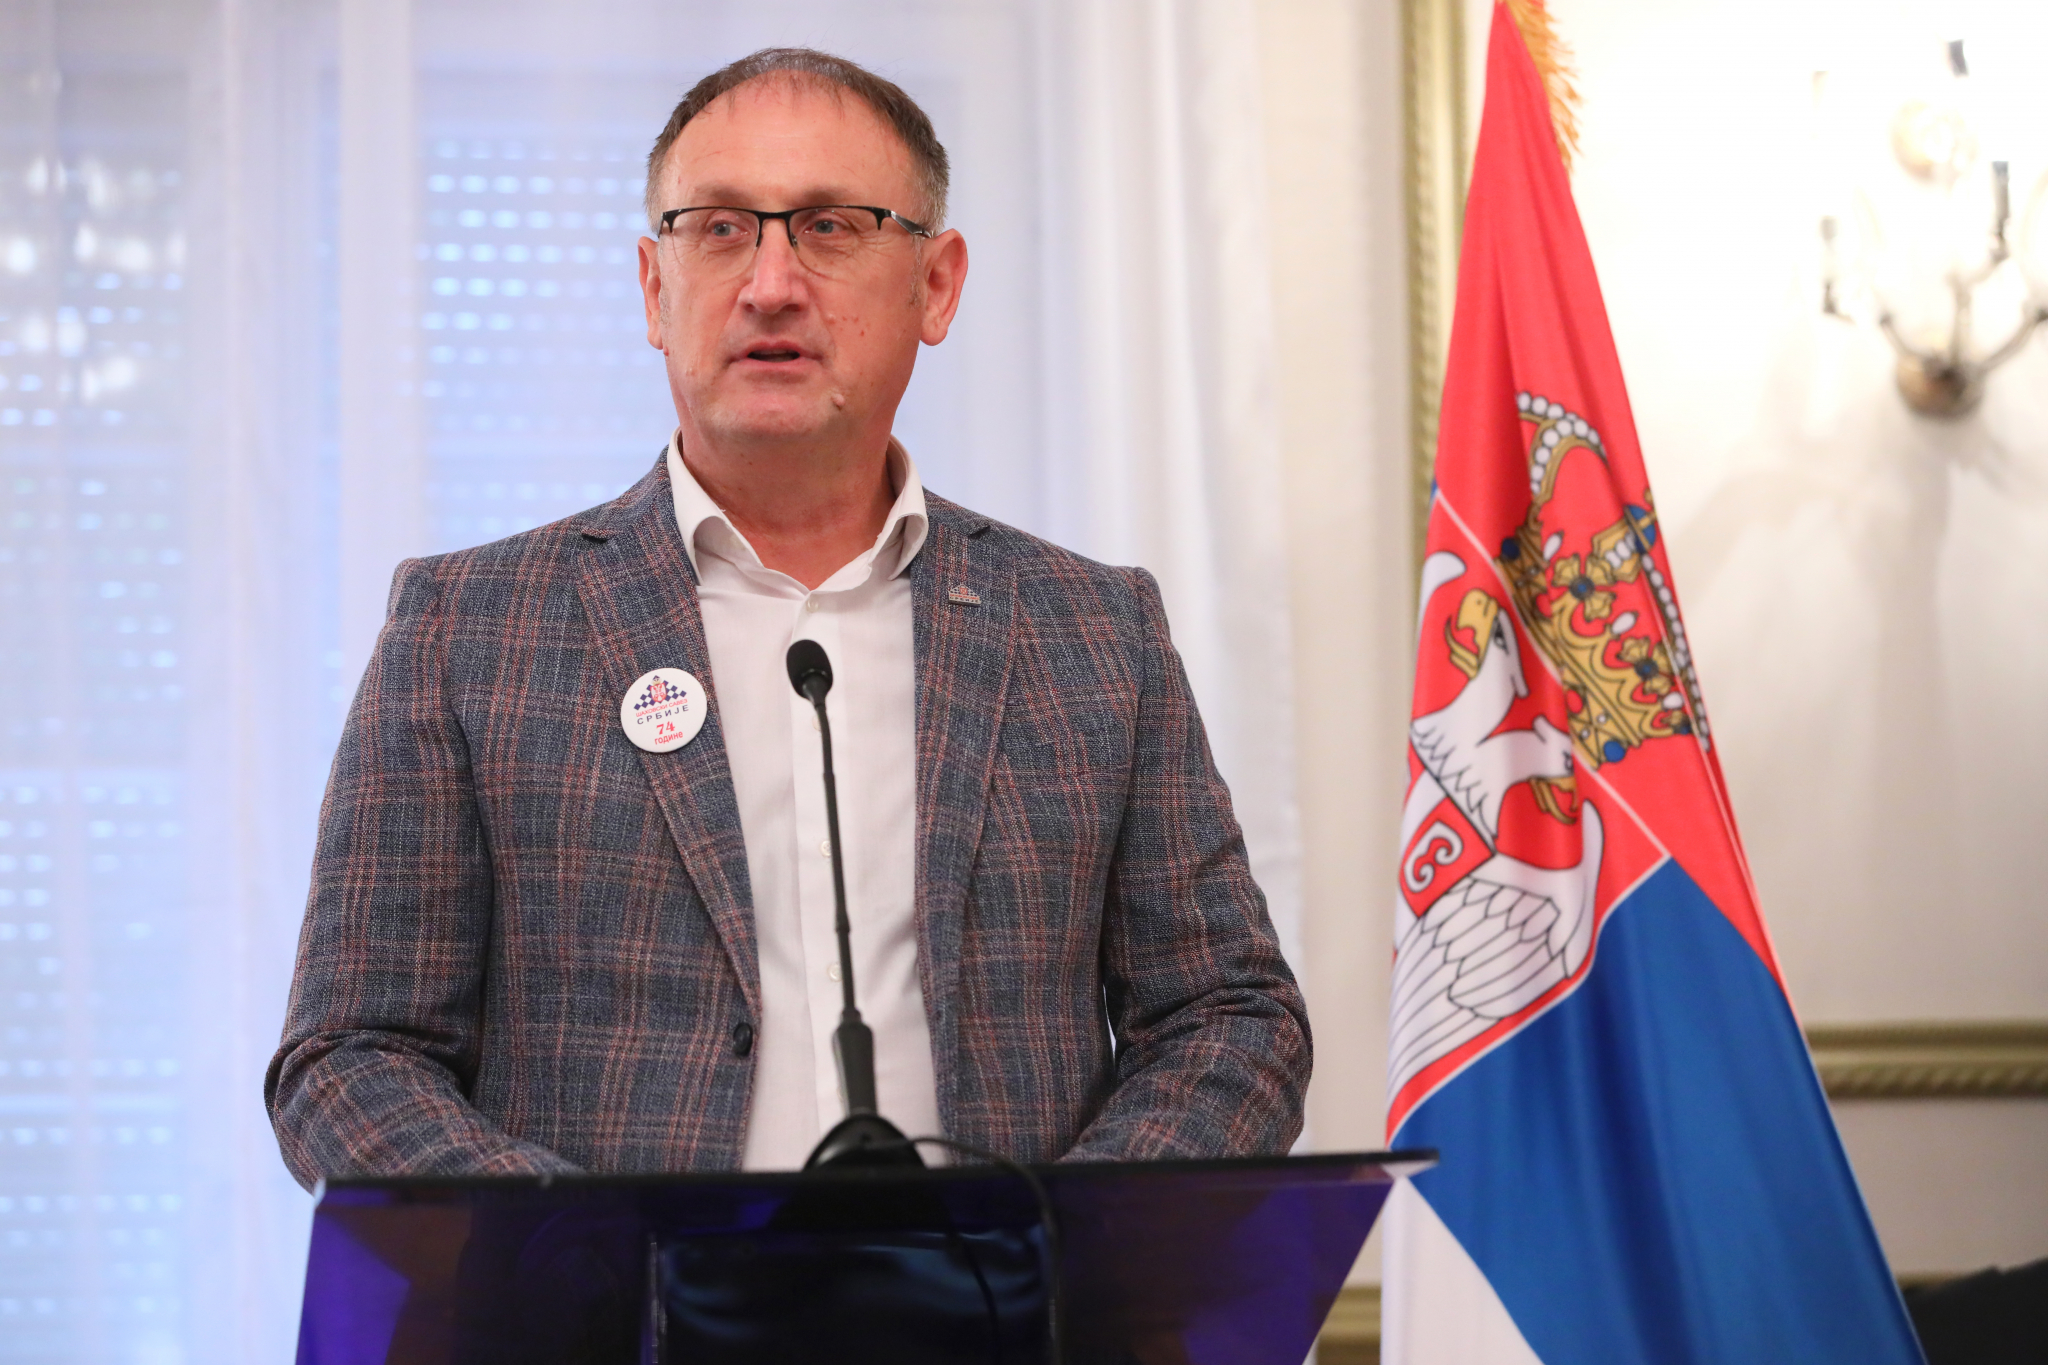 GODINE USPEHA TEK SLEDE Srpski šah proslavio 74. rođendan, predsednik Lazić poručuje: Pred nama su još veći izazovi (VIDEO)